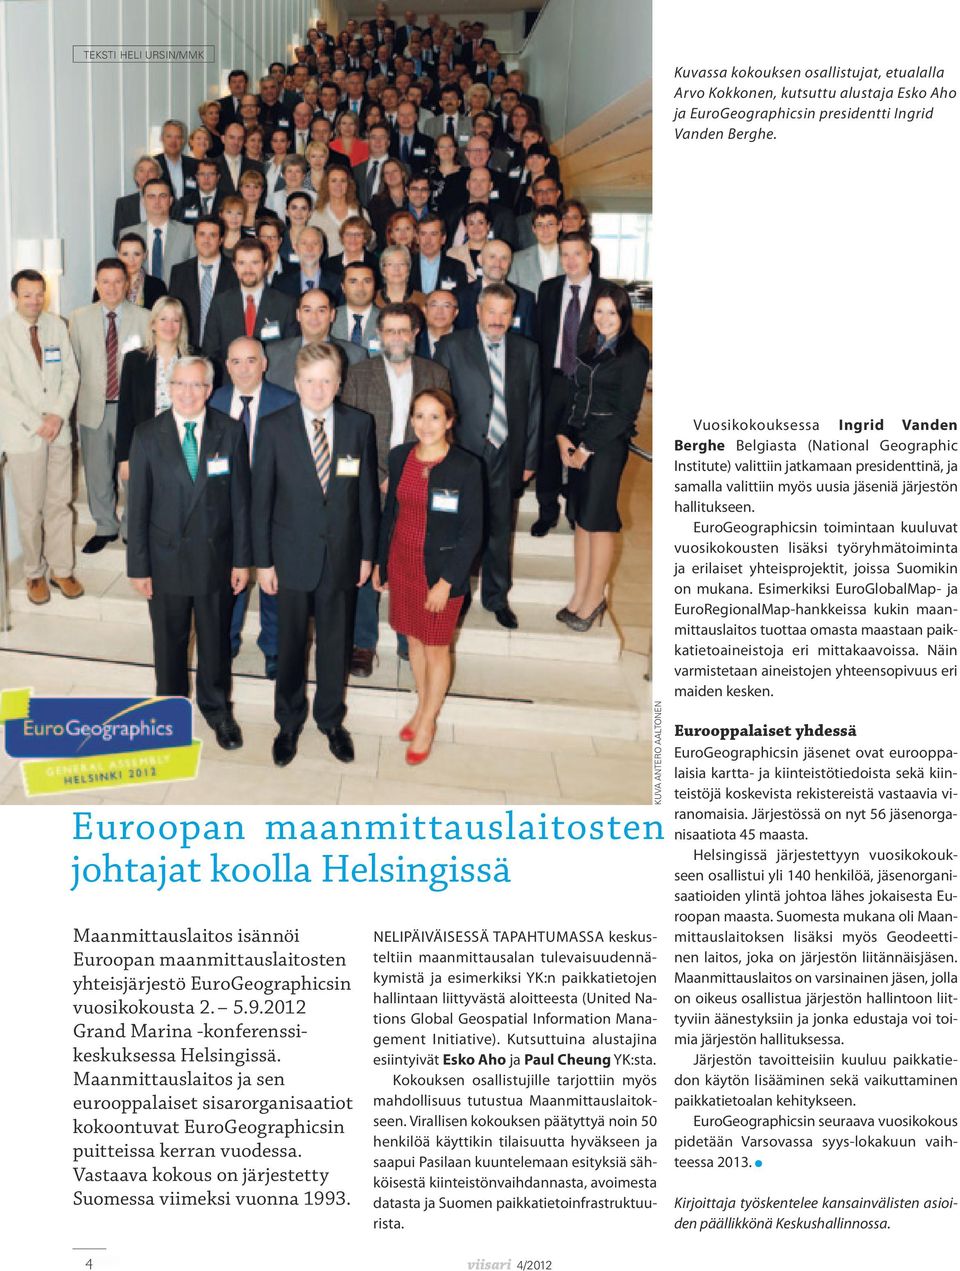 2012 Grand Marina -konferenssikeskuksessa Helsingissä. Maanmittauslaitos ja sen eurooppalaiset sisarorganisaatiot kokoontuvat EuroGeographicsin puitteissa kerran vuodessa.